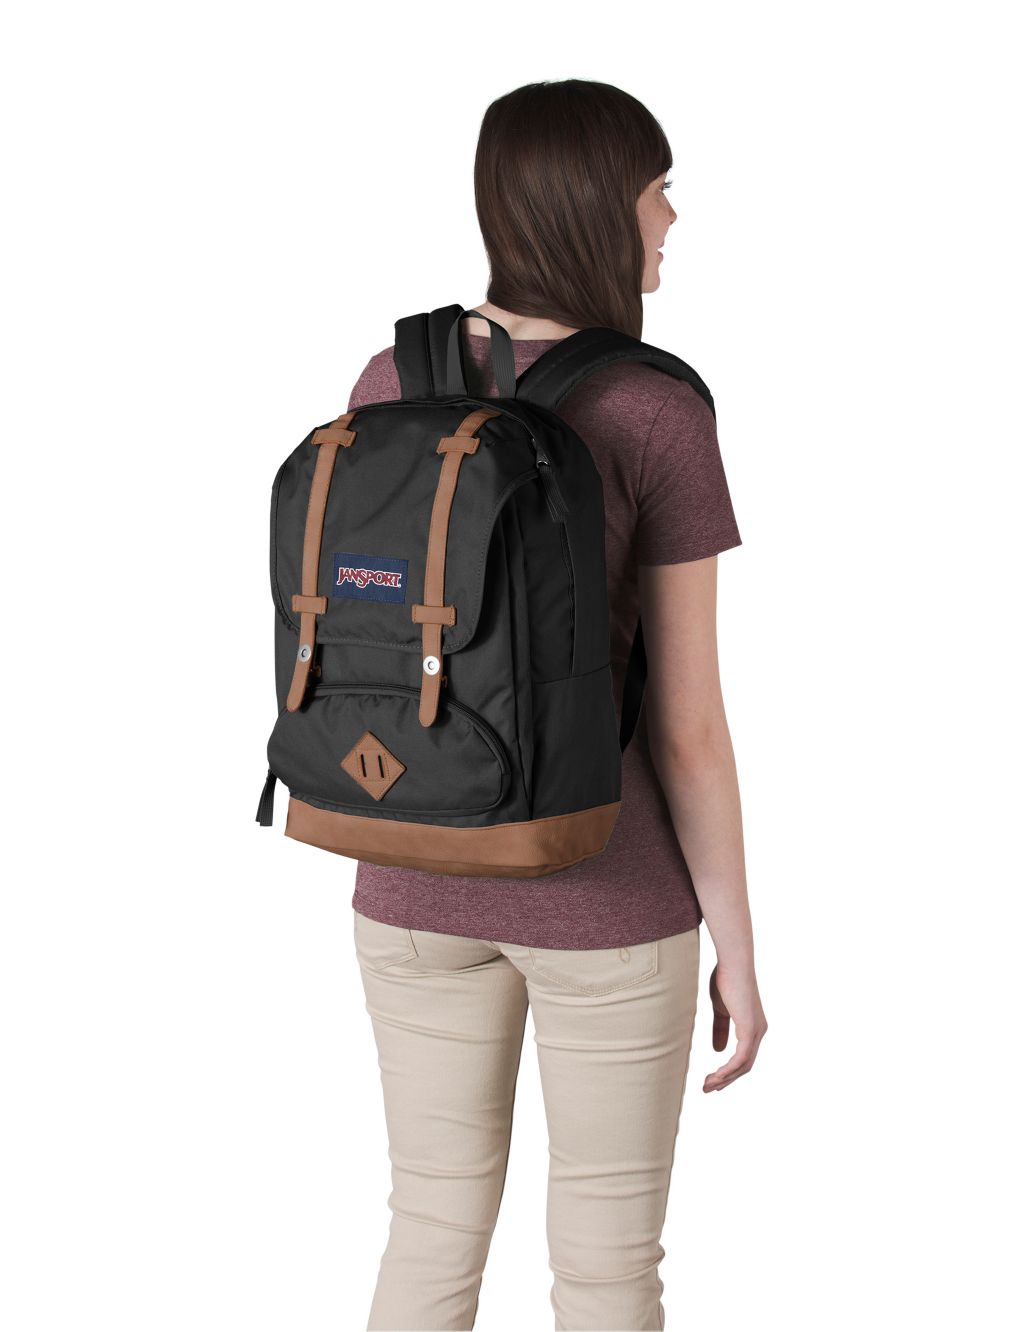 Cortlandt Multi Pocket Backpack image 2